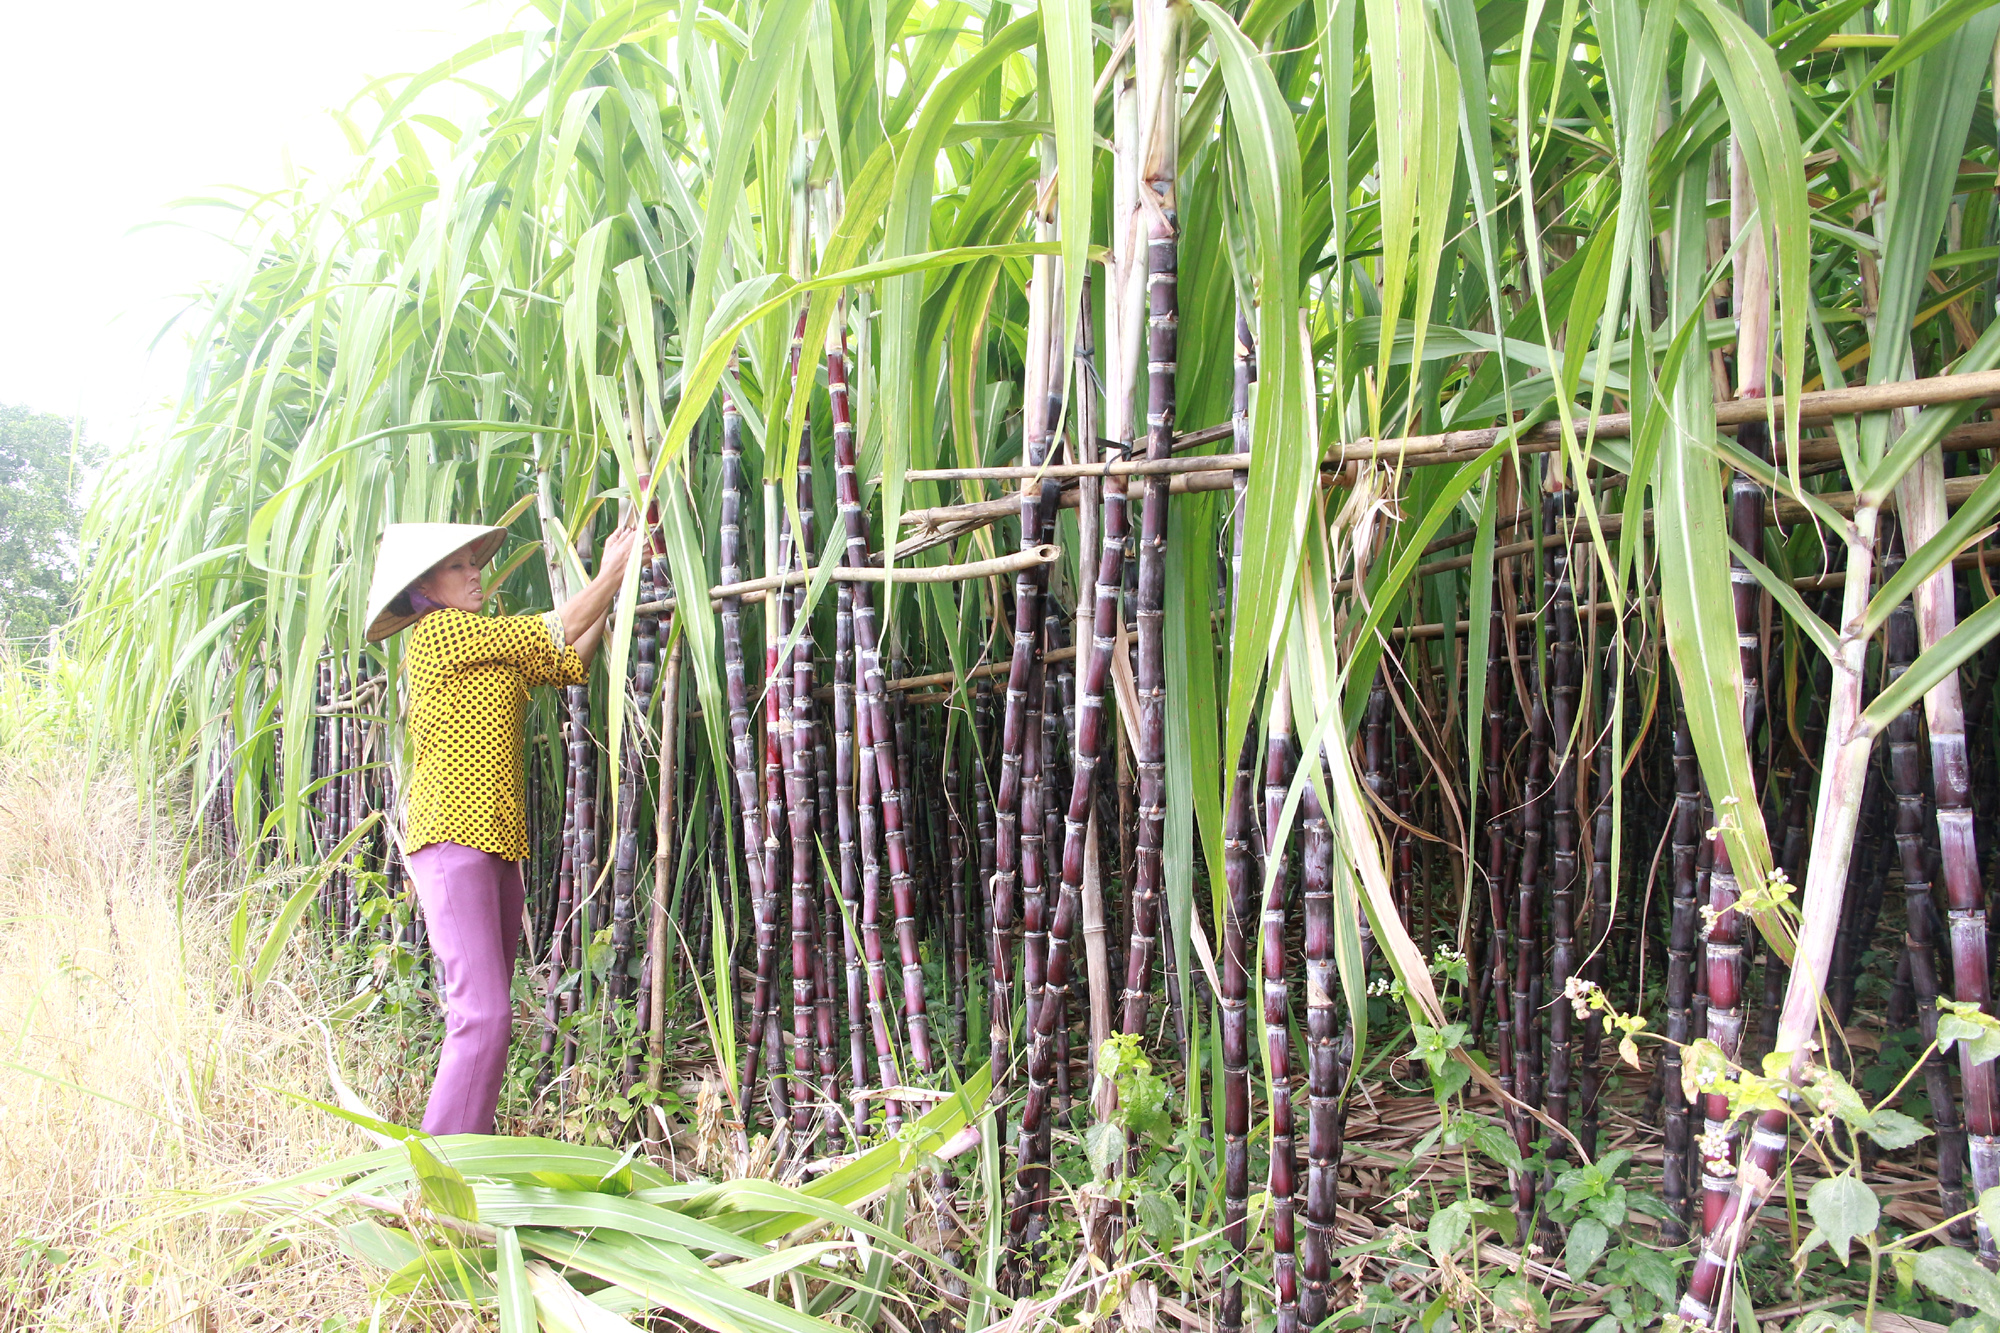 Chuyển đổi từ diện tích trồng lúa kém hiệu quả sang trồng mía tím tại xã Quảng Chính (Hải Hà). Ảnh: Mạnh Trường